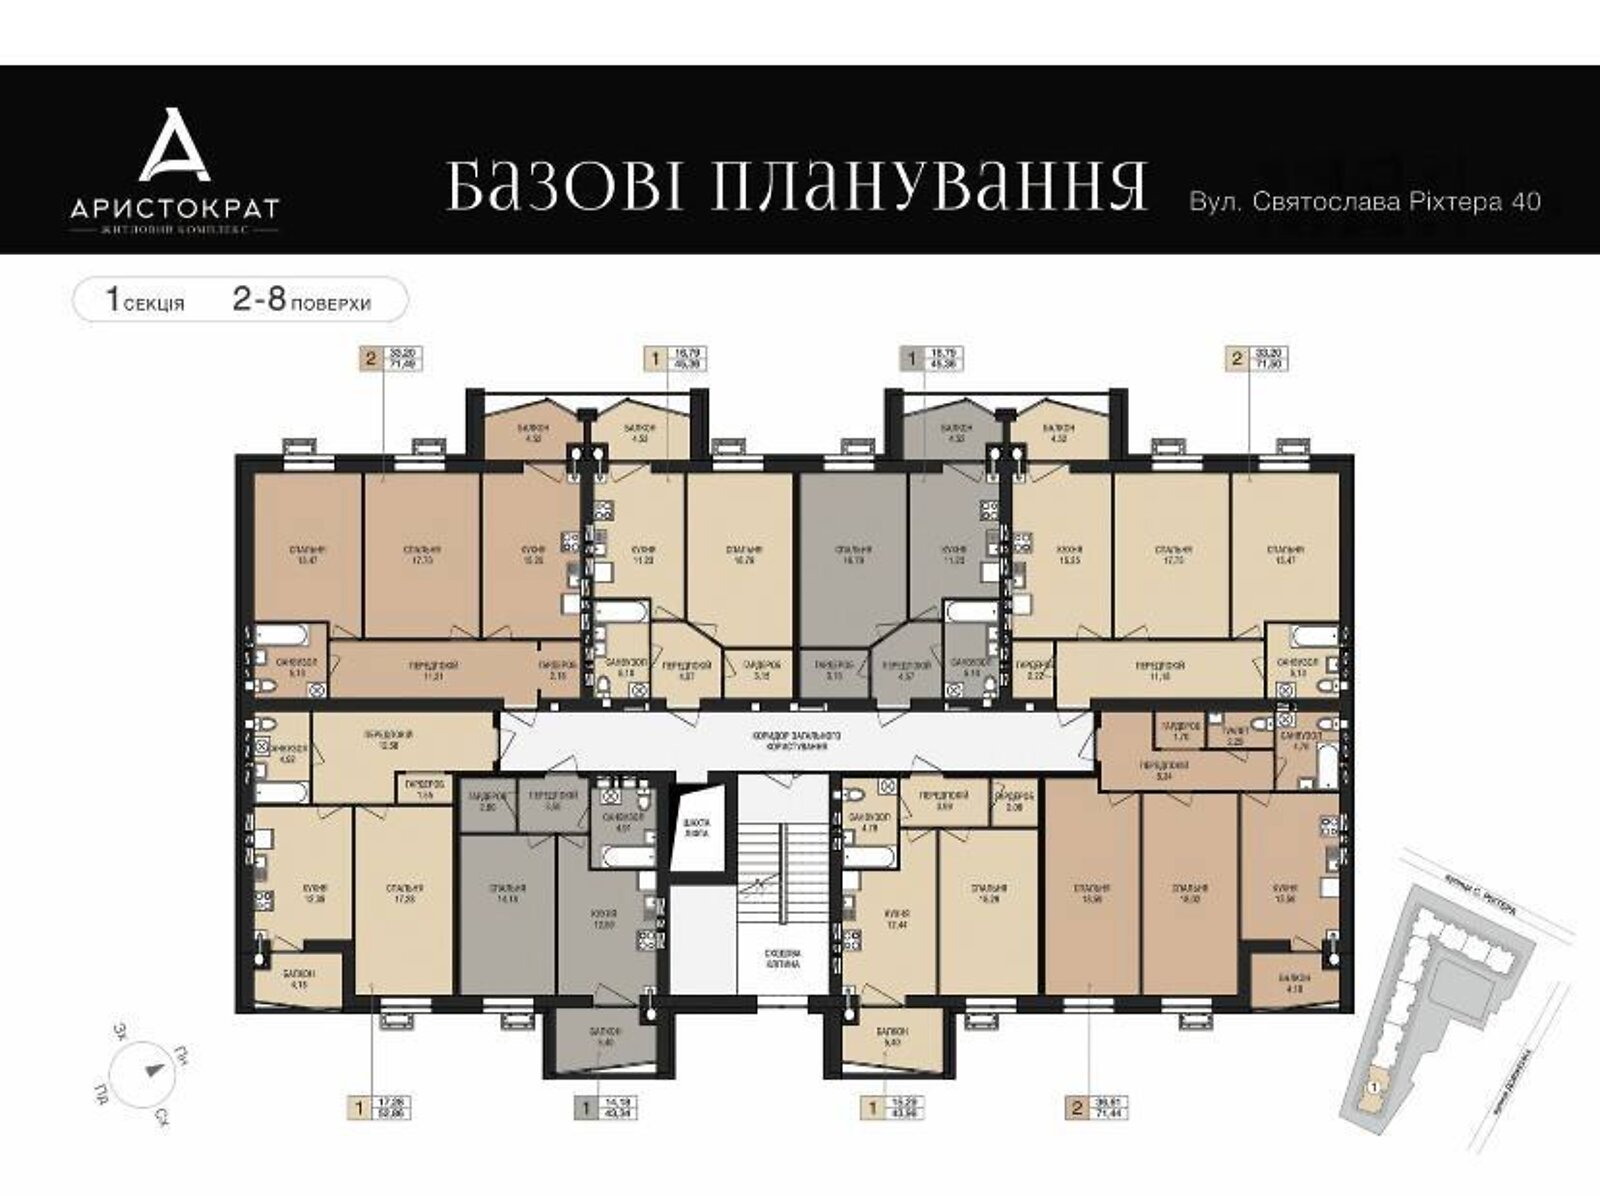 Продаж однокімнатної квартири в Житомирі, на вул. Святослава Ріхтера 40, фото 1